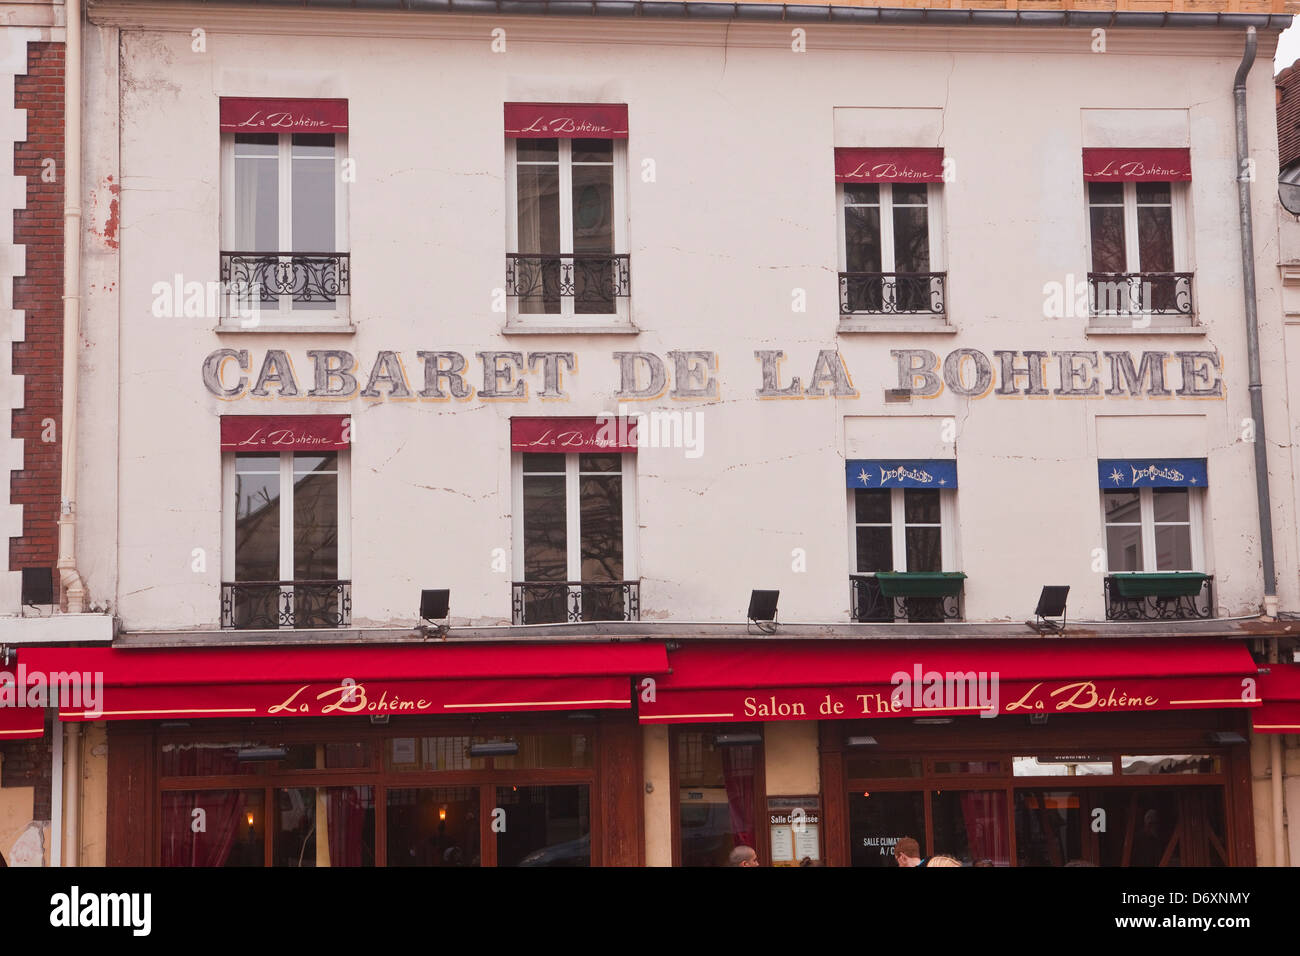 The Cabaret de la Boheme in Montmartre, Paris Stock Photo - Alamy